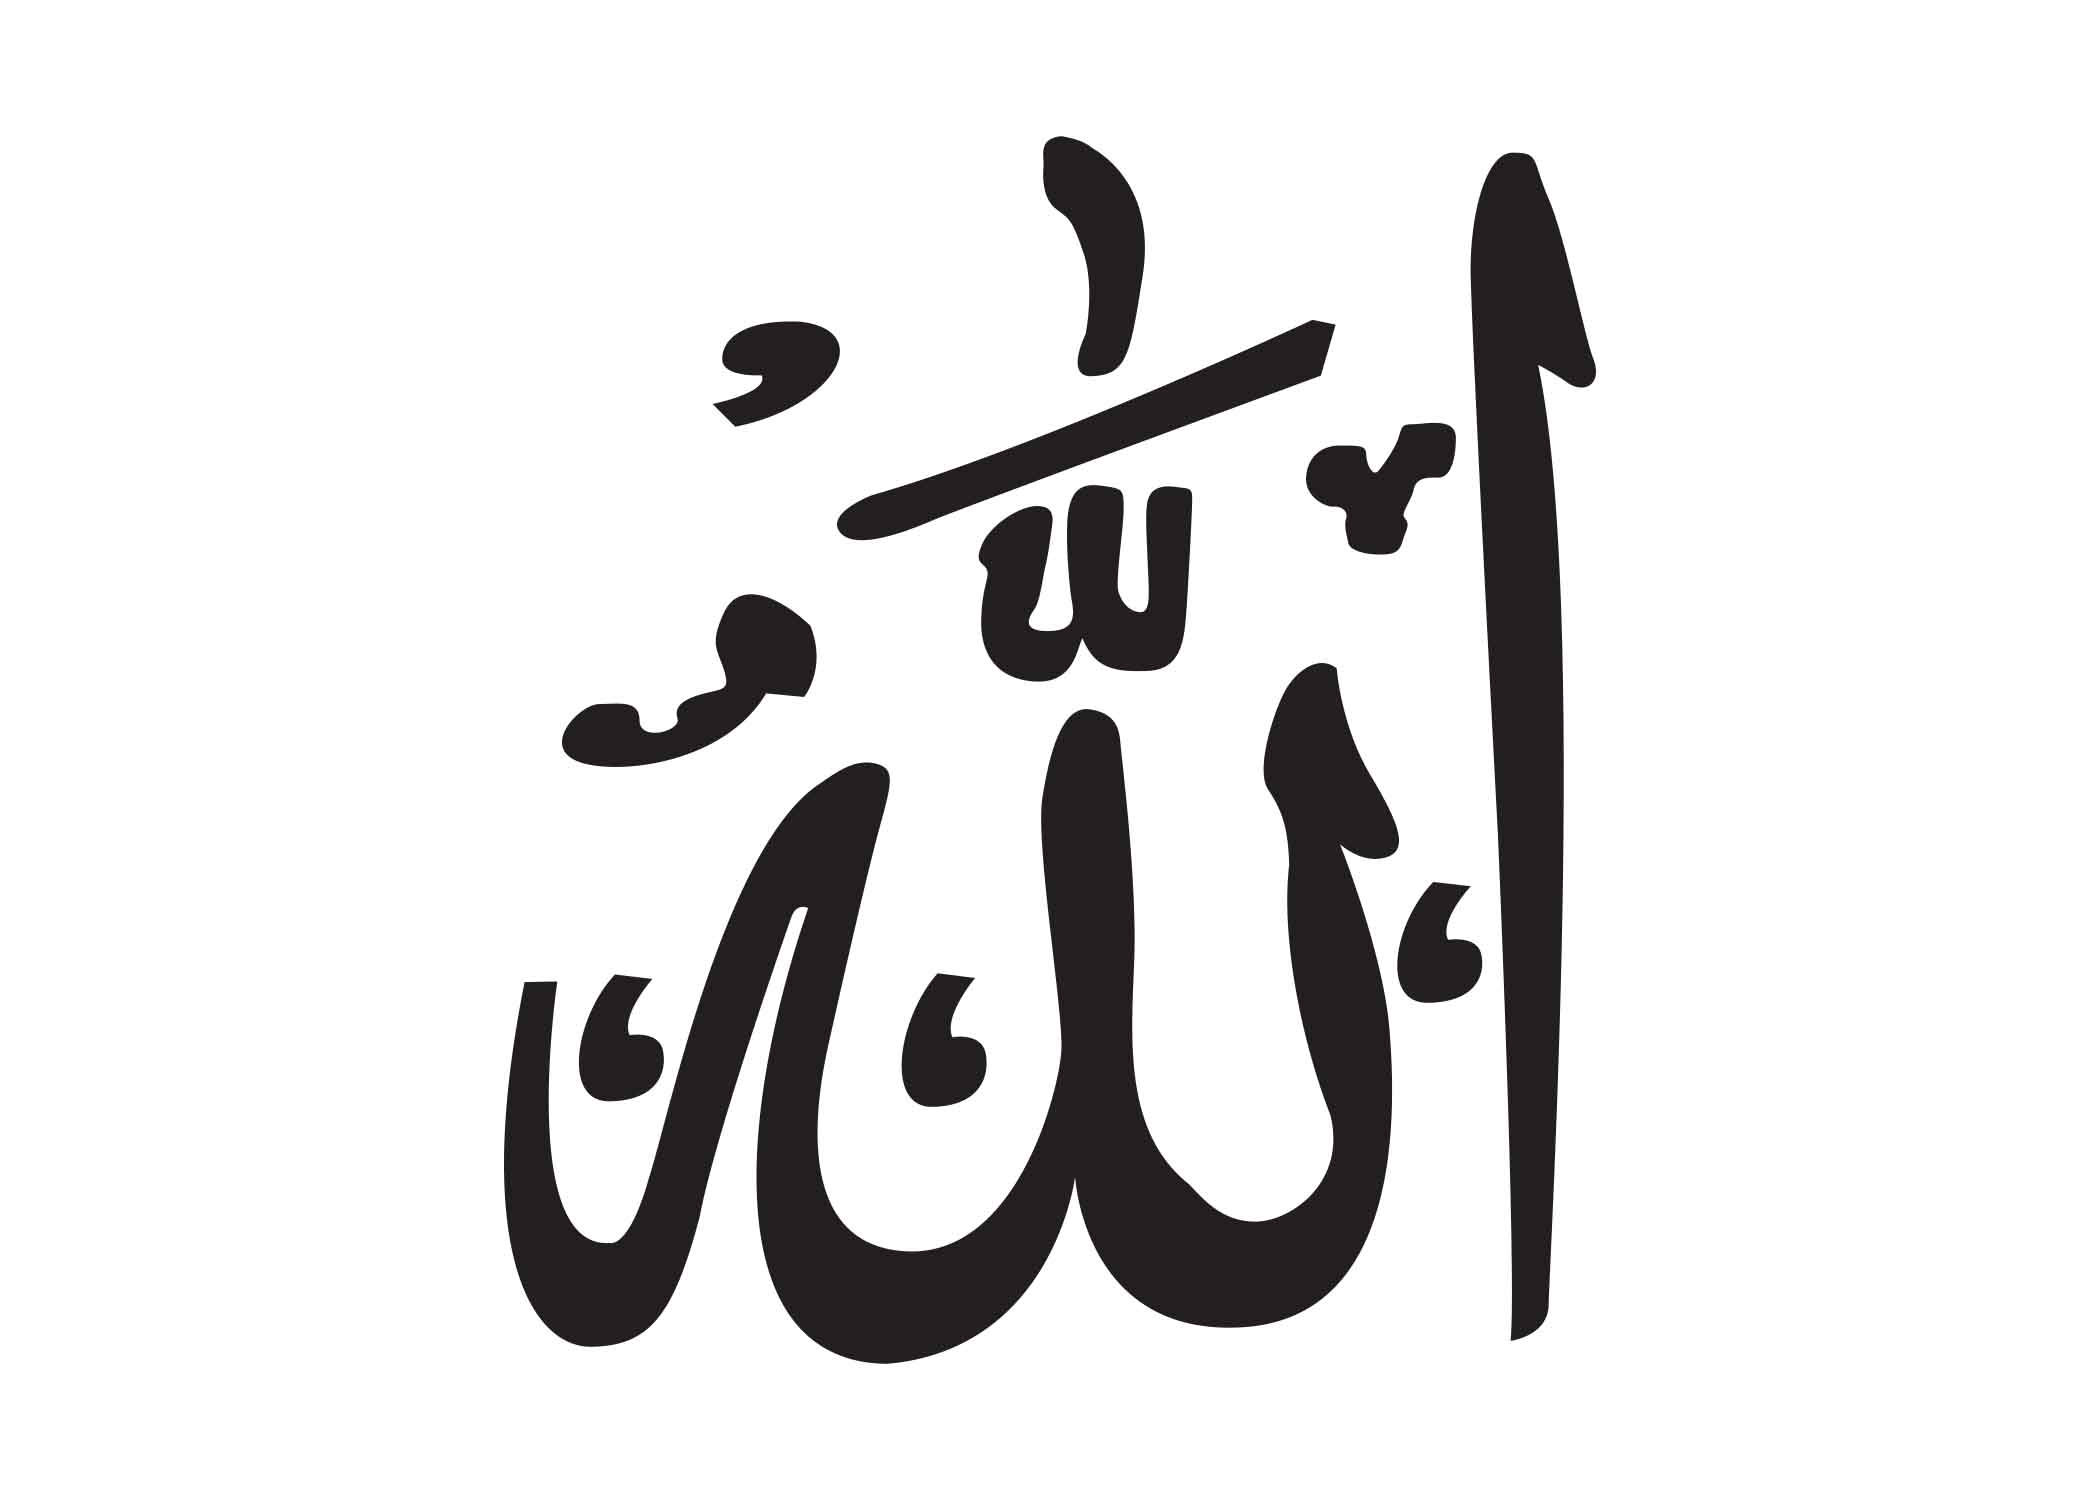 আল্লাহ্‌- Allah